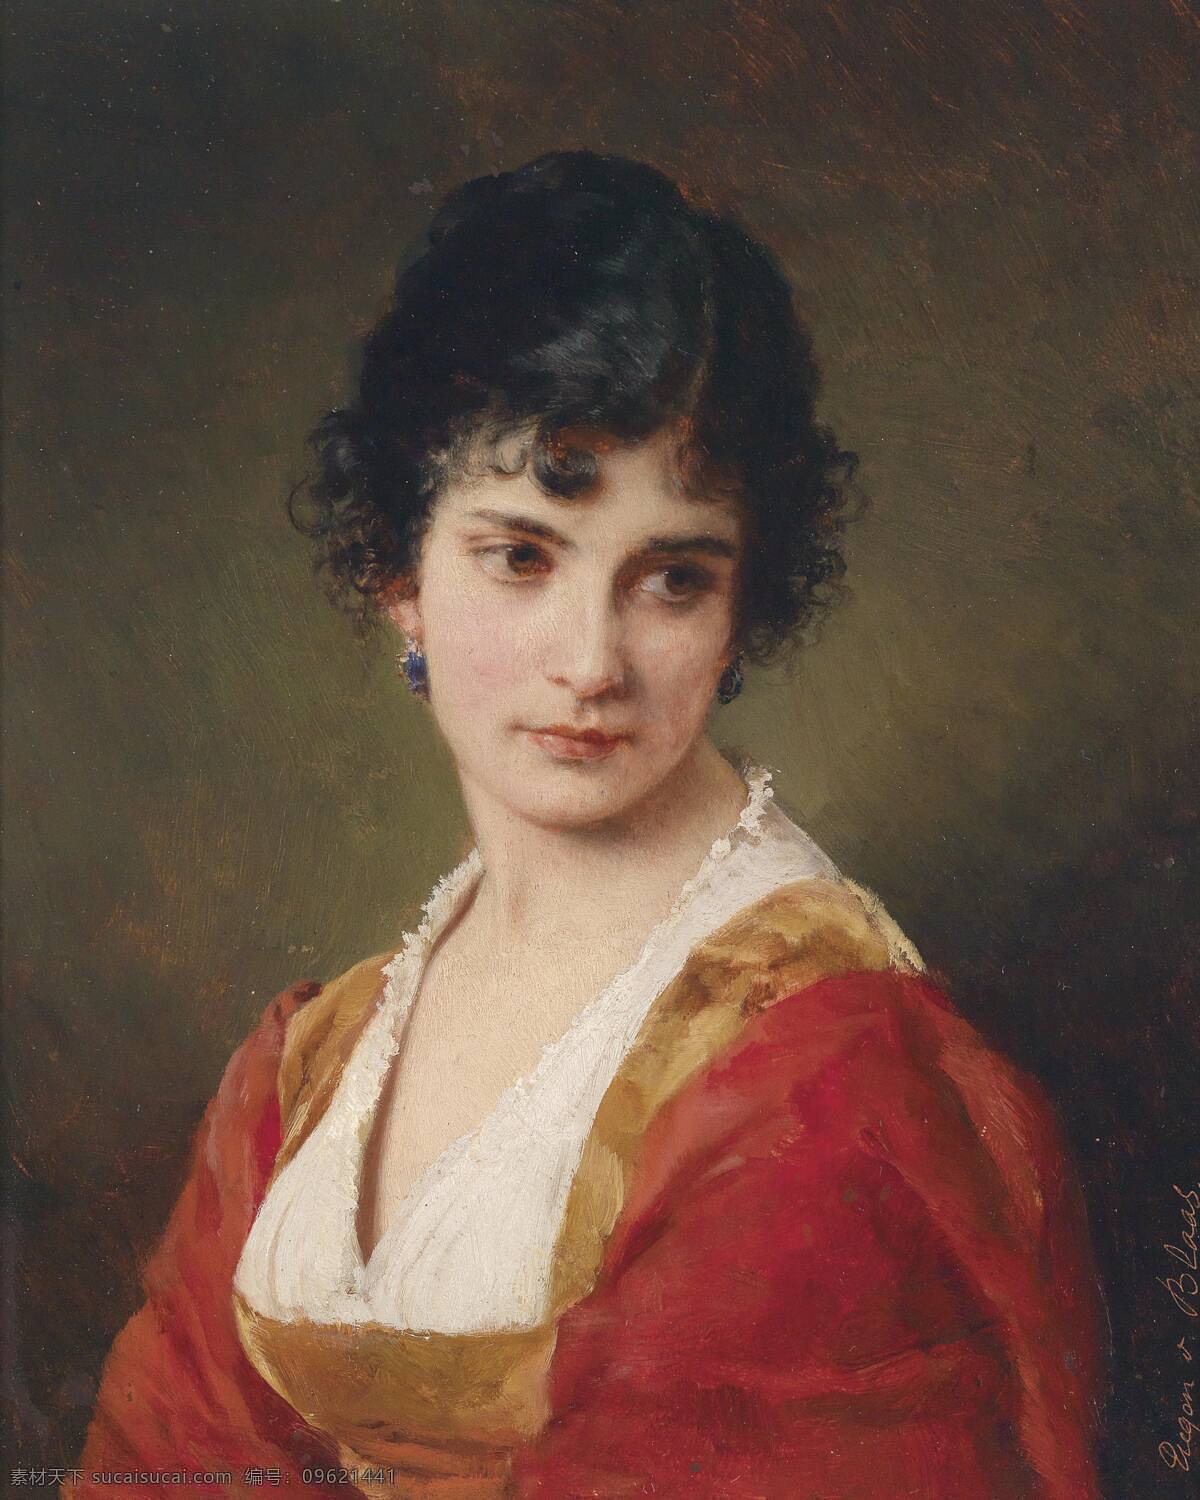 年轻女子肖像 欧根 冯 布 砬 斯 女人 女子 人体 艺术 肖像 油画 世界名画 西洋油画 绘画书法 文化艺术